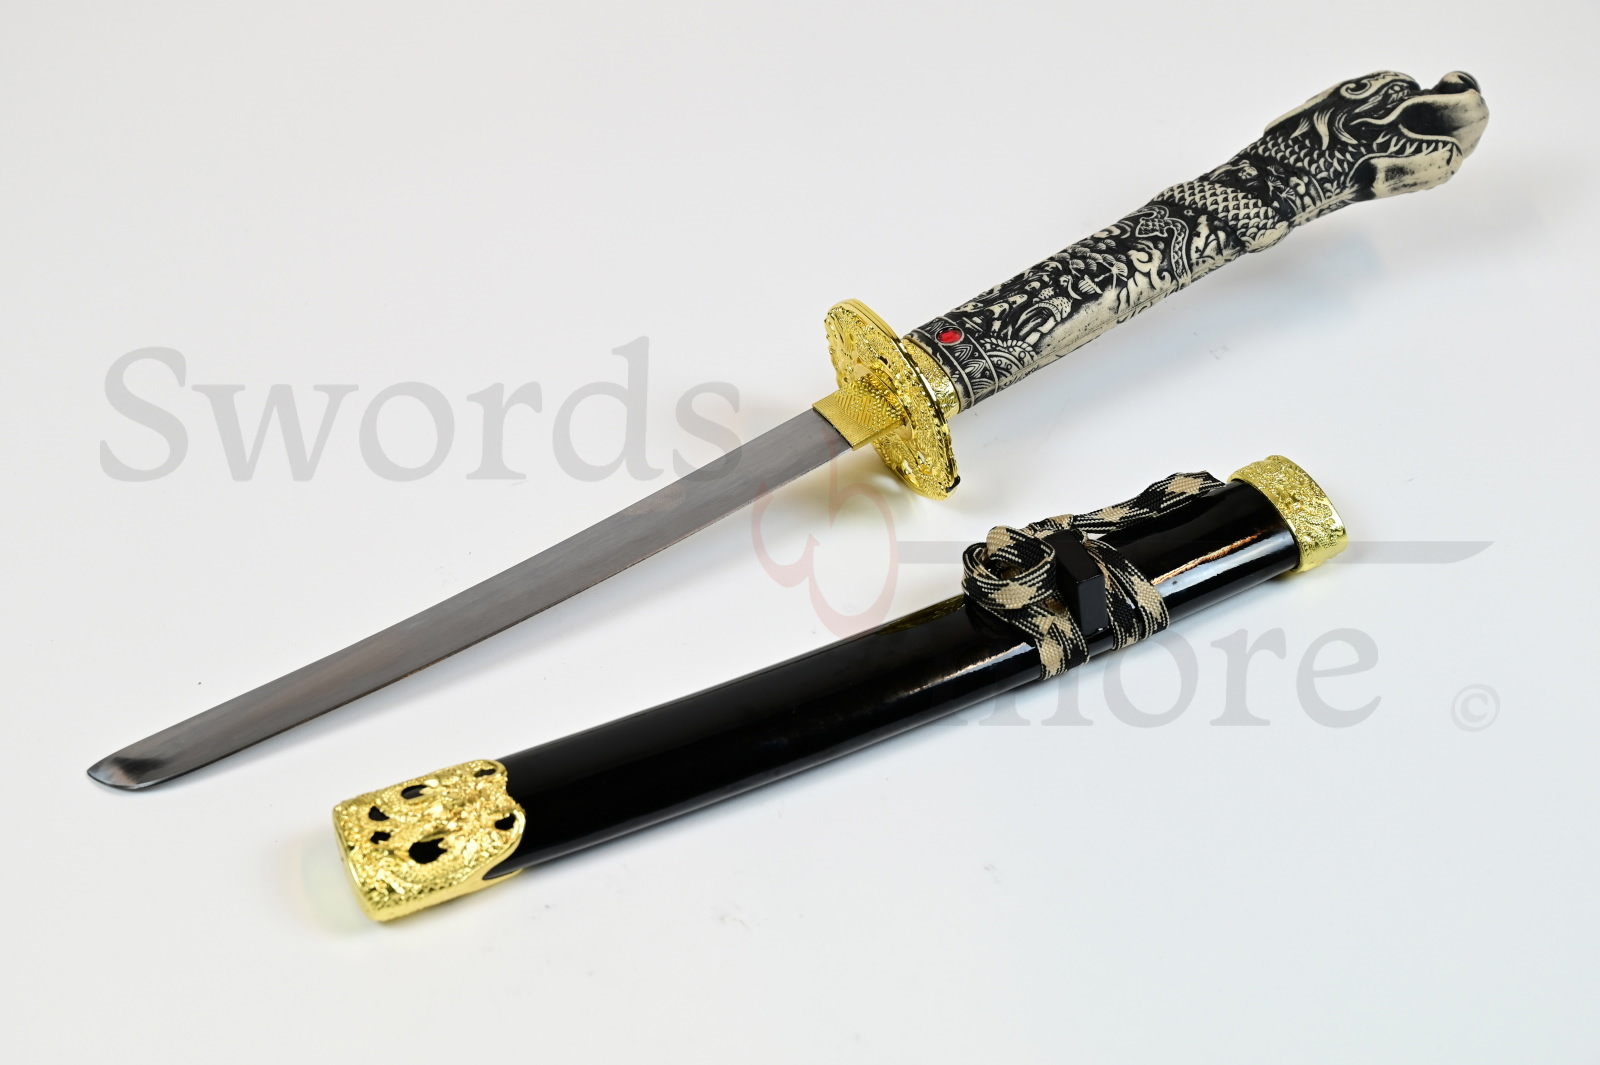 Highlander - Duncan MacLeod Sword Set